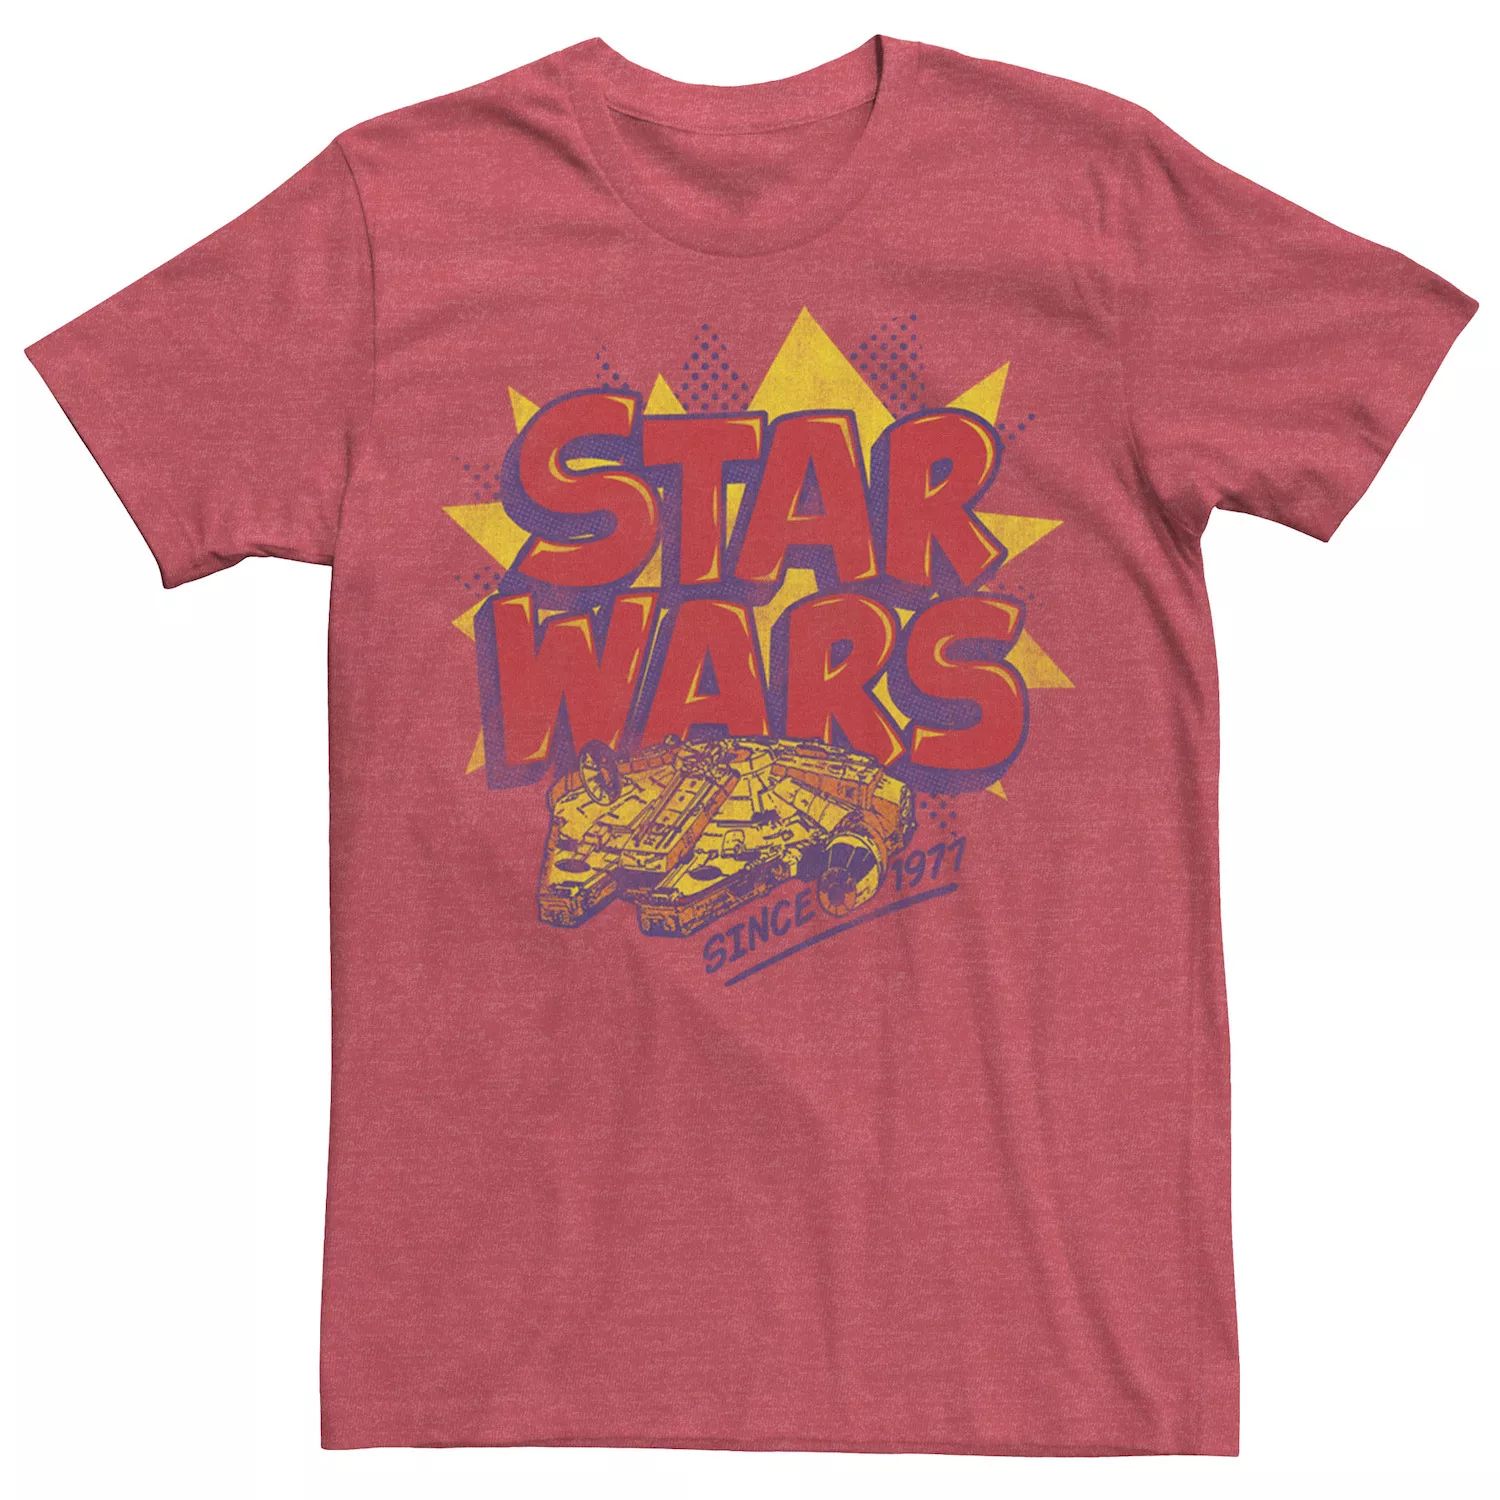 Мужская футболка с логотипом комиксов «Звездные войны: Сокол тысячелетия» Star Wars мужская футболка с профилем сокол тысячелетия по звездным войнам star wars белый